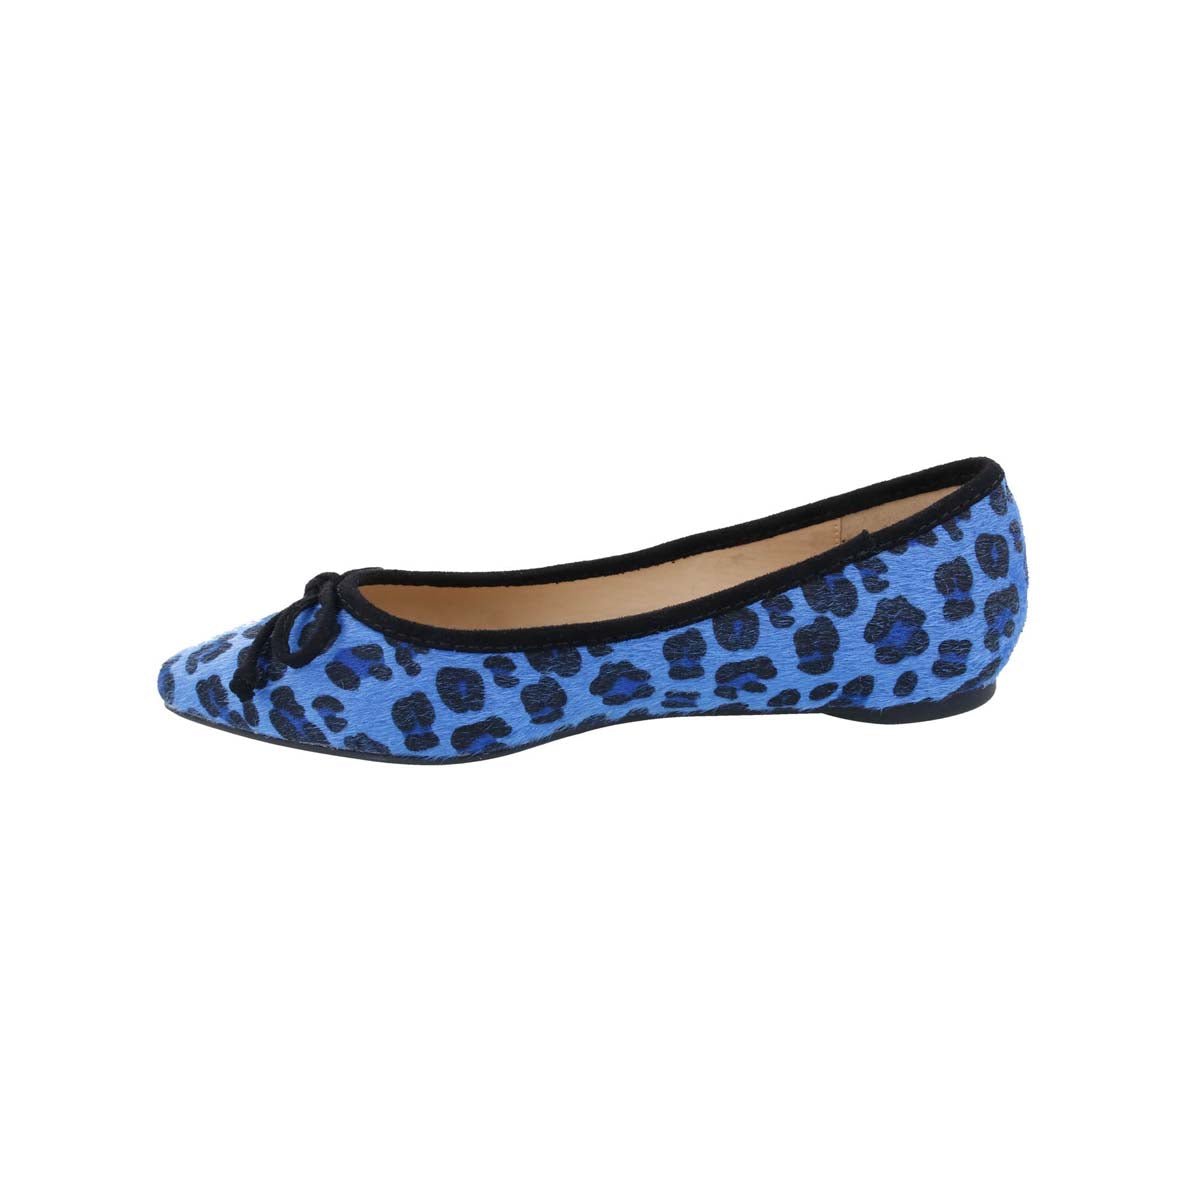 PENNY LOVES KENNY NIP WOMEN BALLET SLIP-ON SHOE IN BLUE/BLACK FAUX HAIR - TLW Shoes